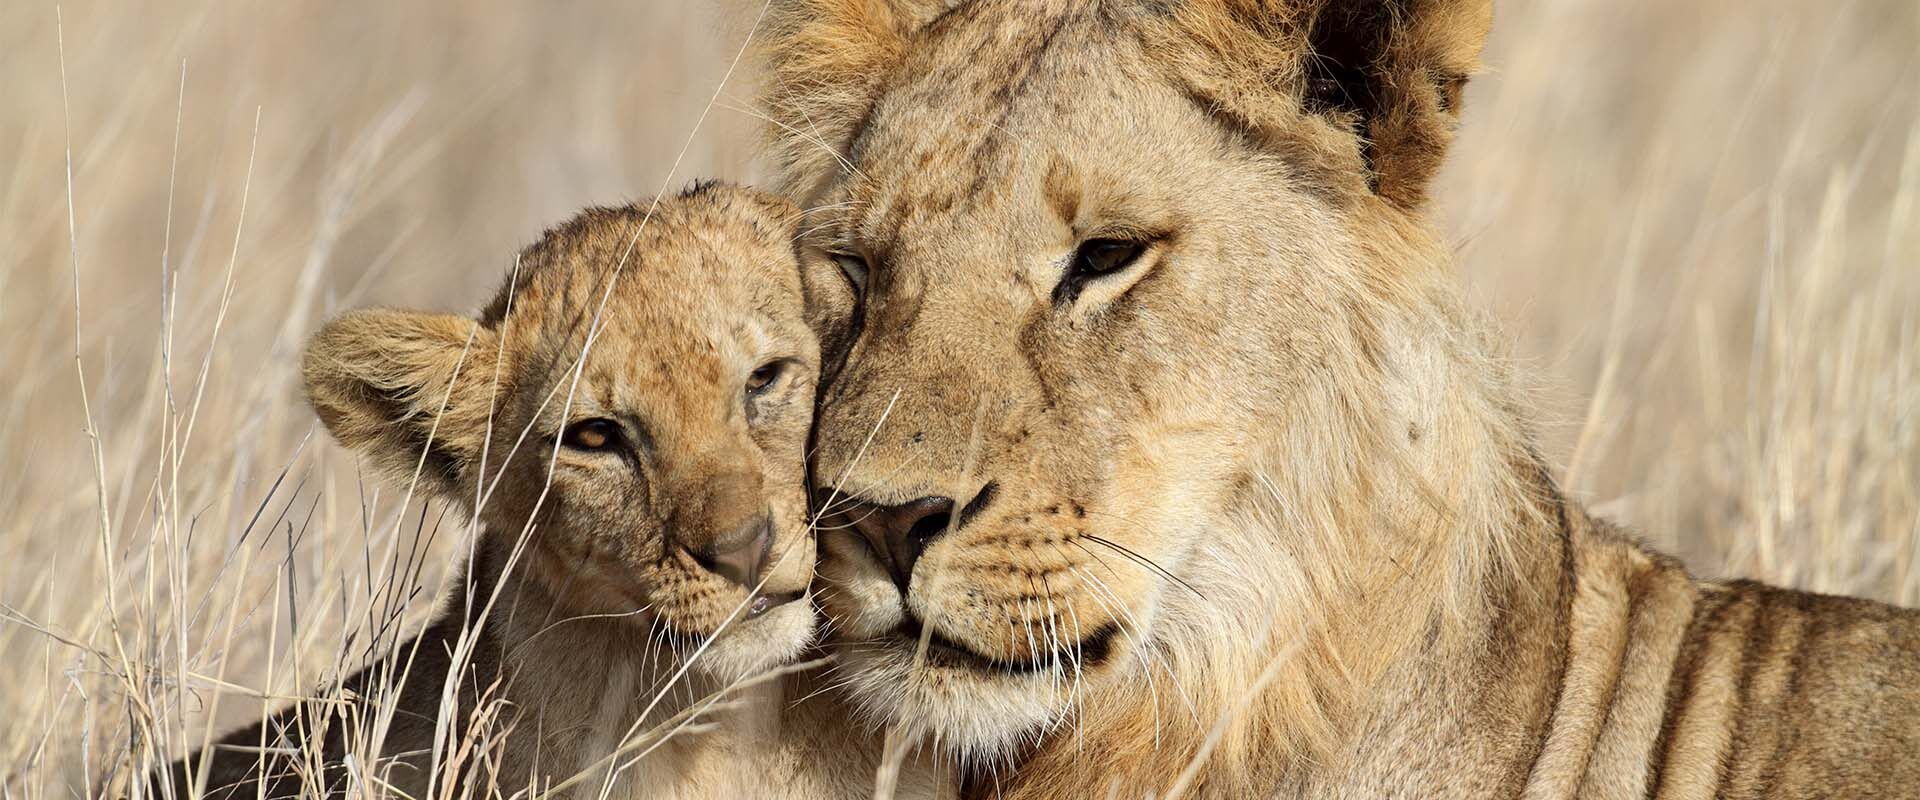 Moederleeuw en leeuwenwelp op de Serengeti in Tanzania